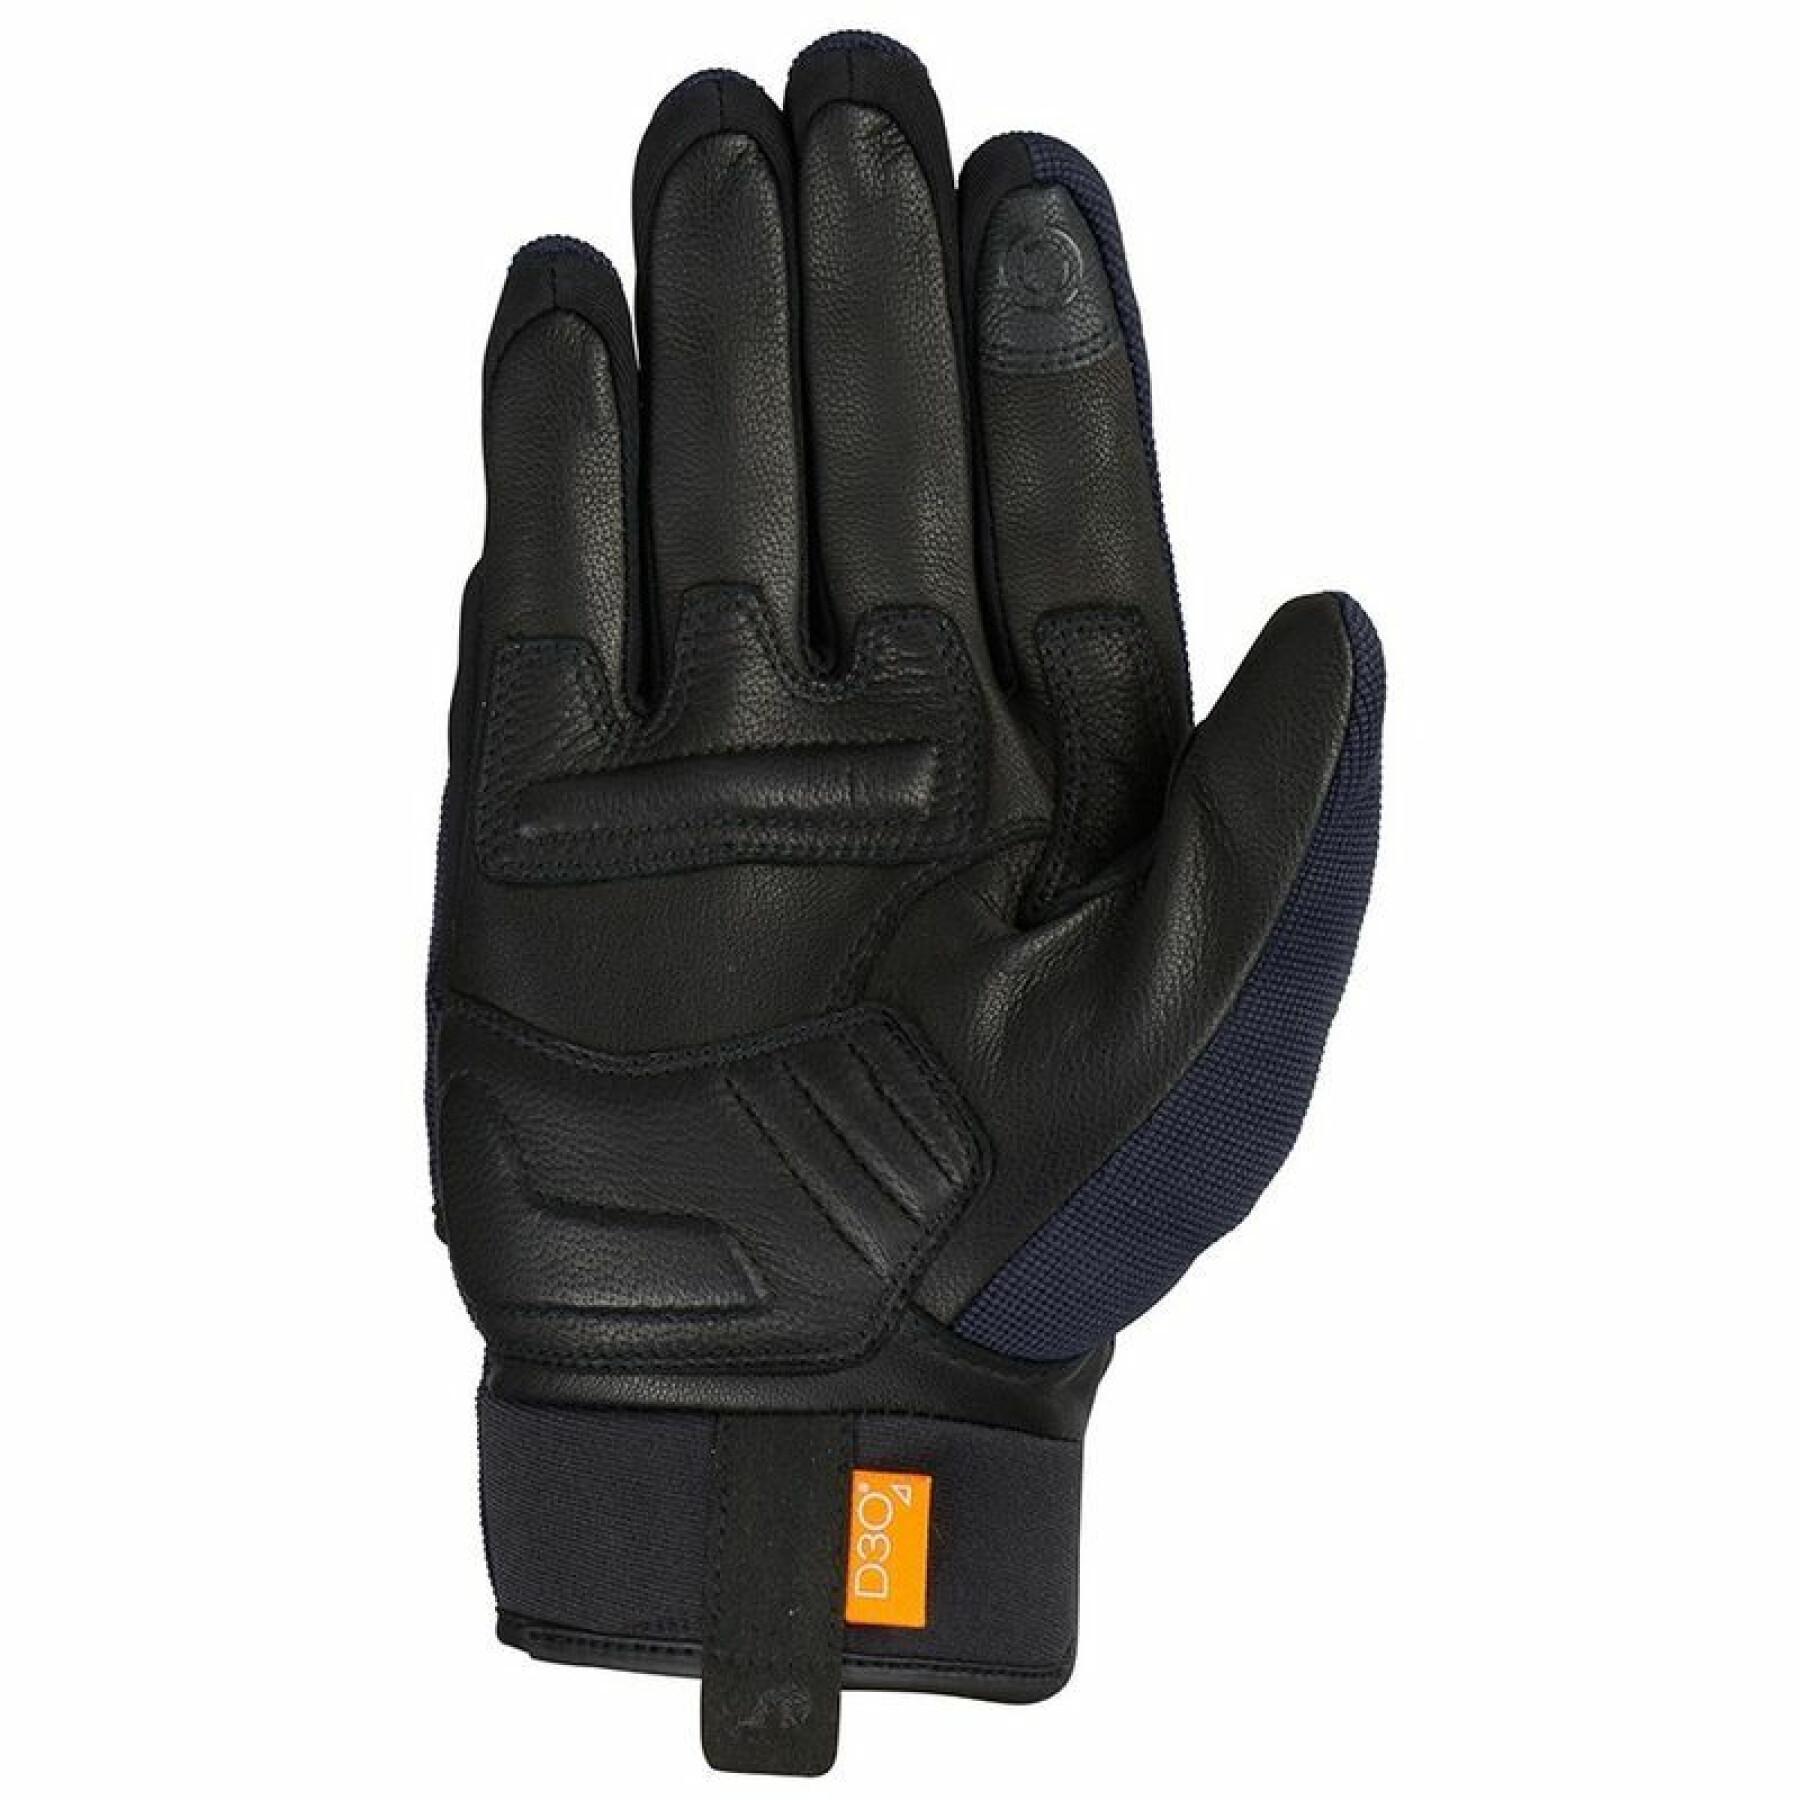 Furygan jet d3o verano motocicleta guantes talla L-negro 